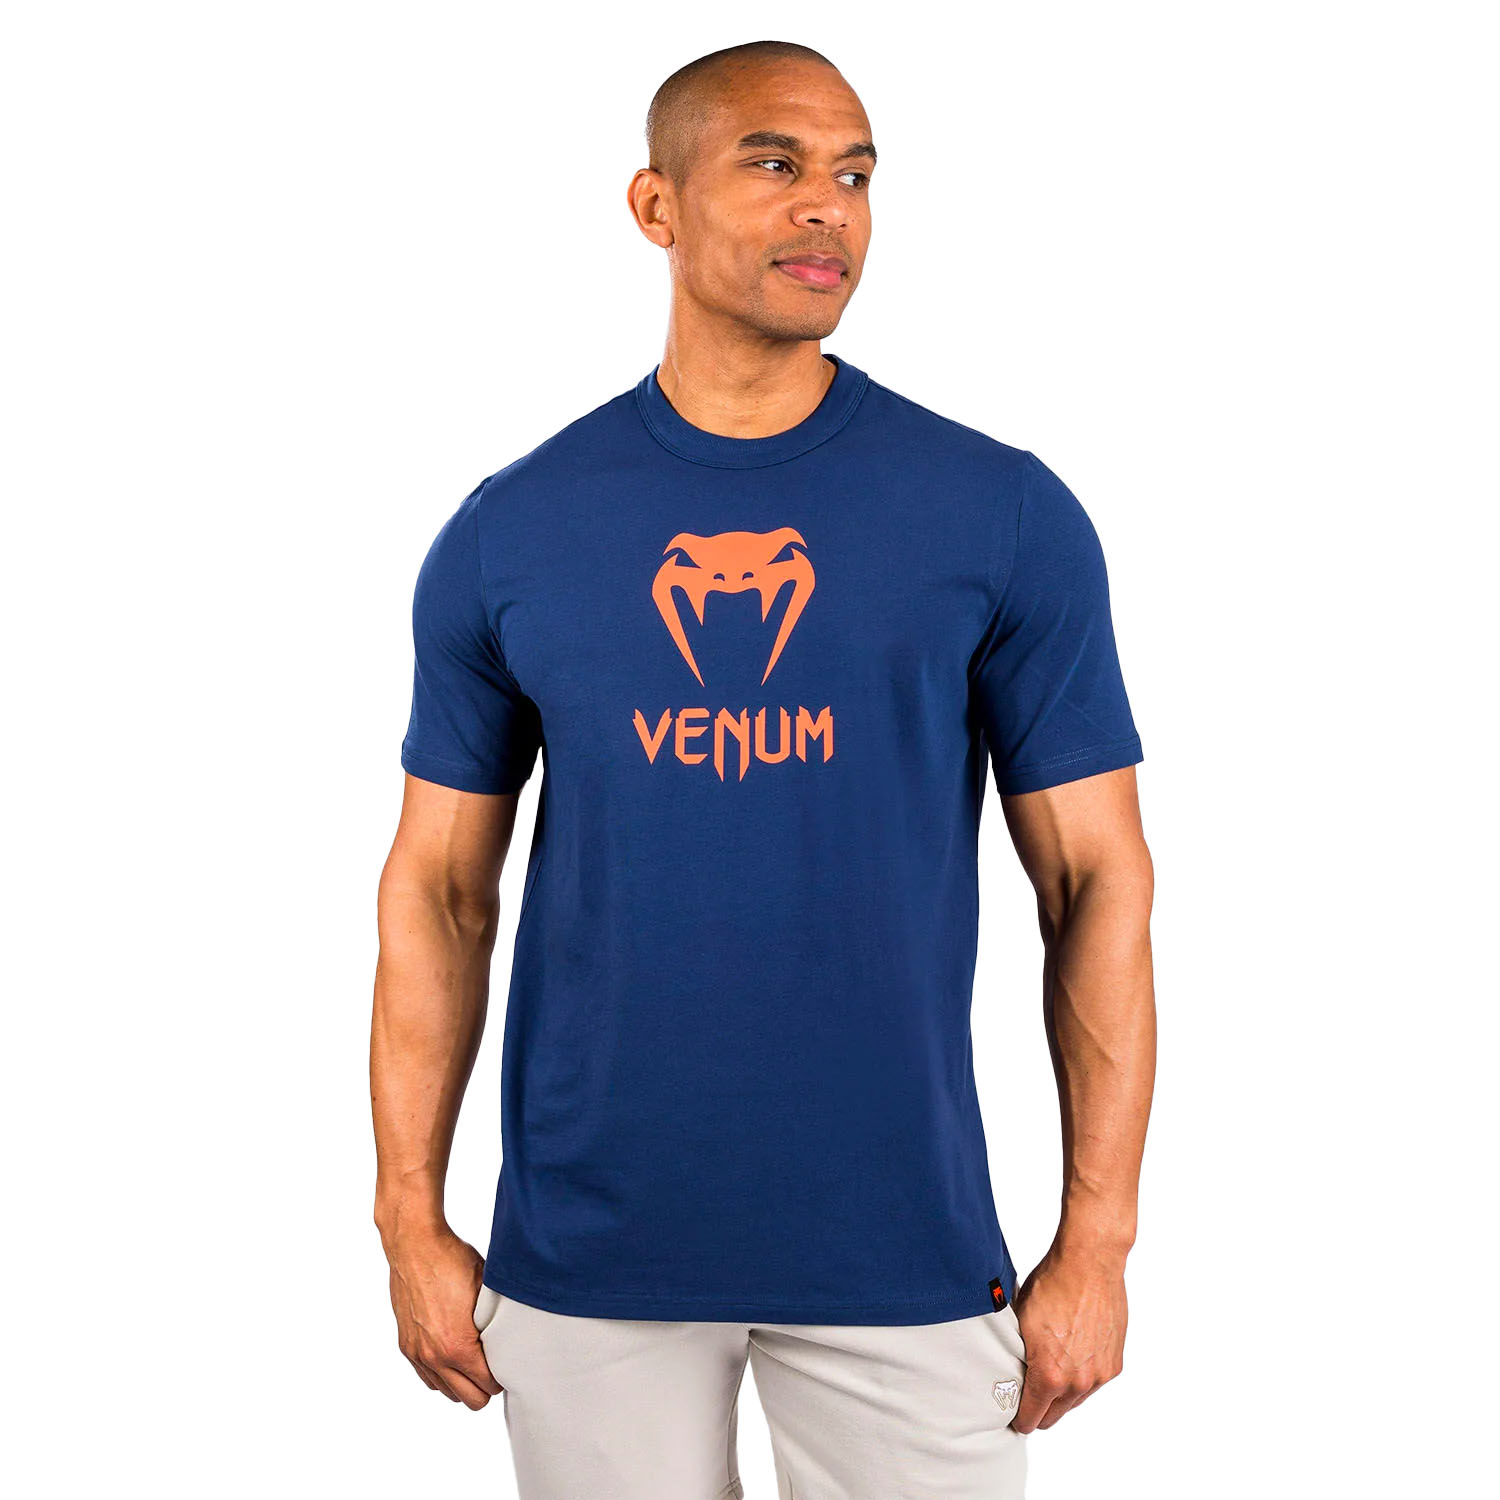 VENUM T-Shirt, Classic, navy-orange